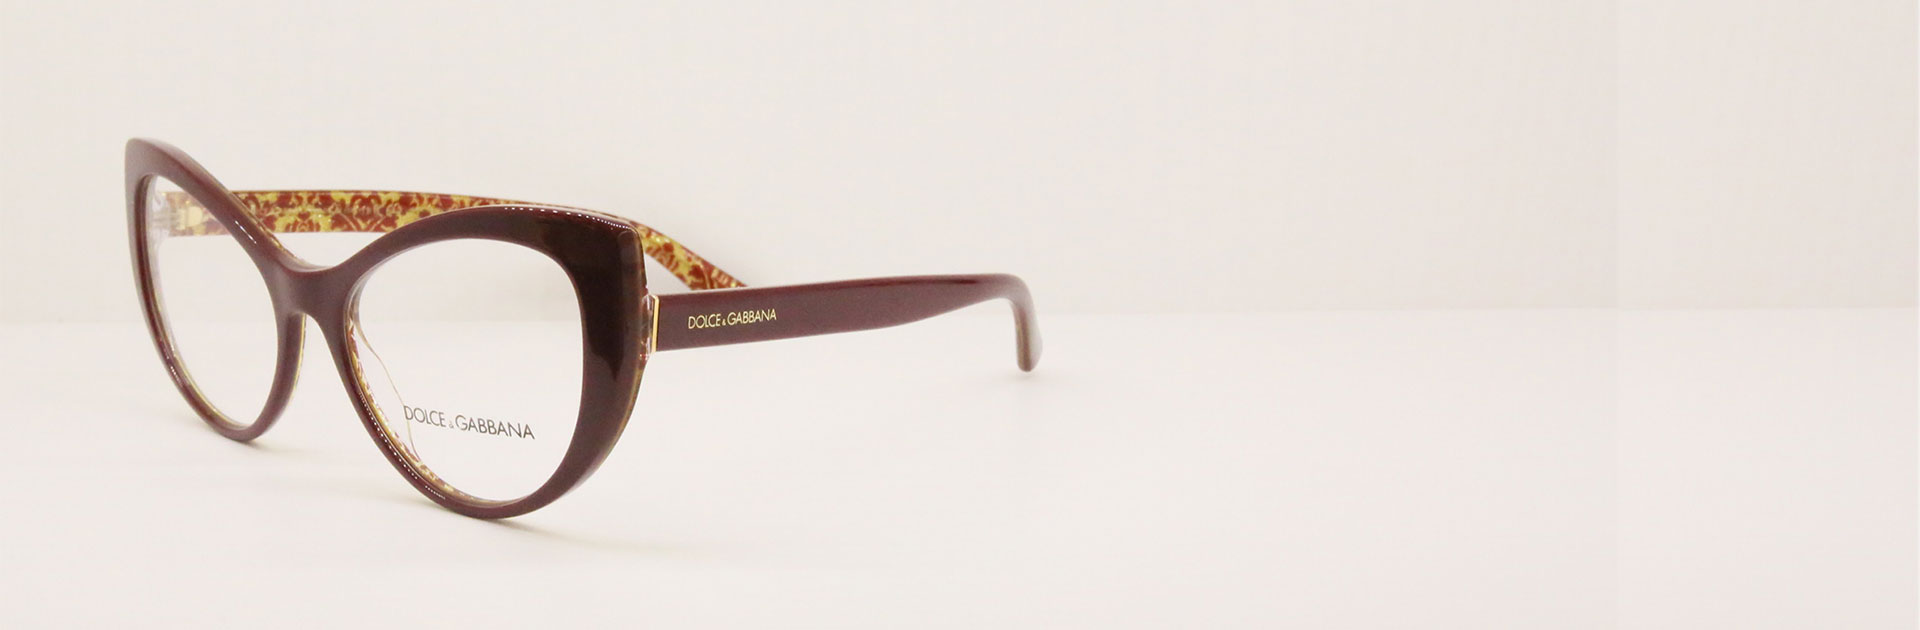 Vendita occhiali, lenti a contatto Empoli - Foto Ottica Baldinotti